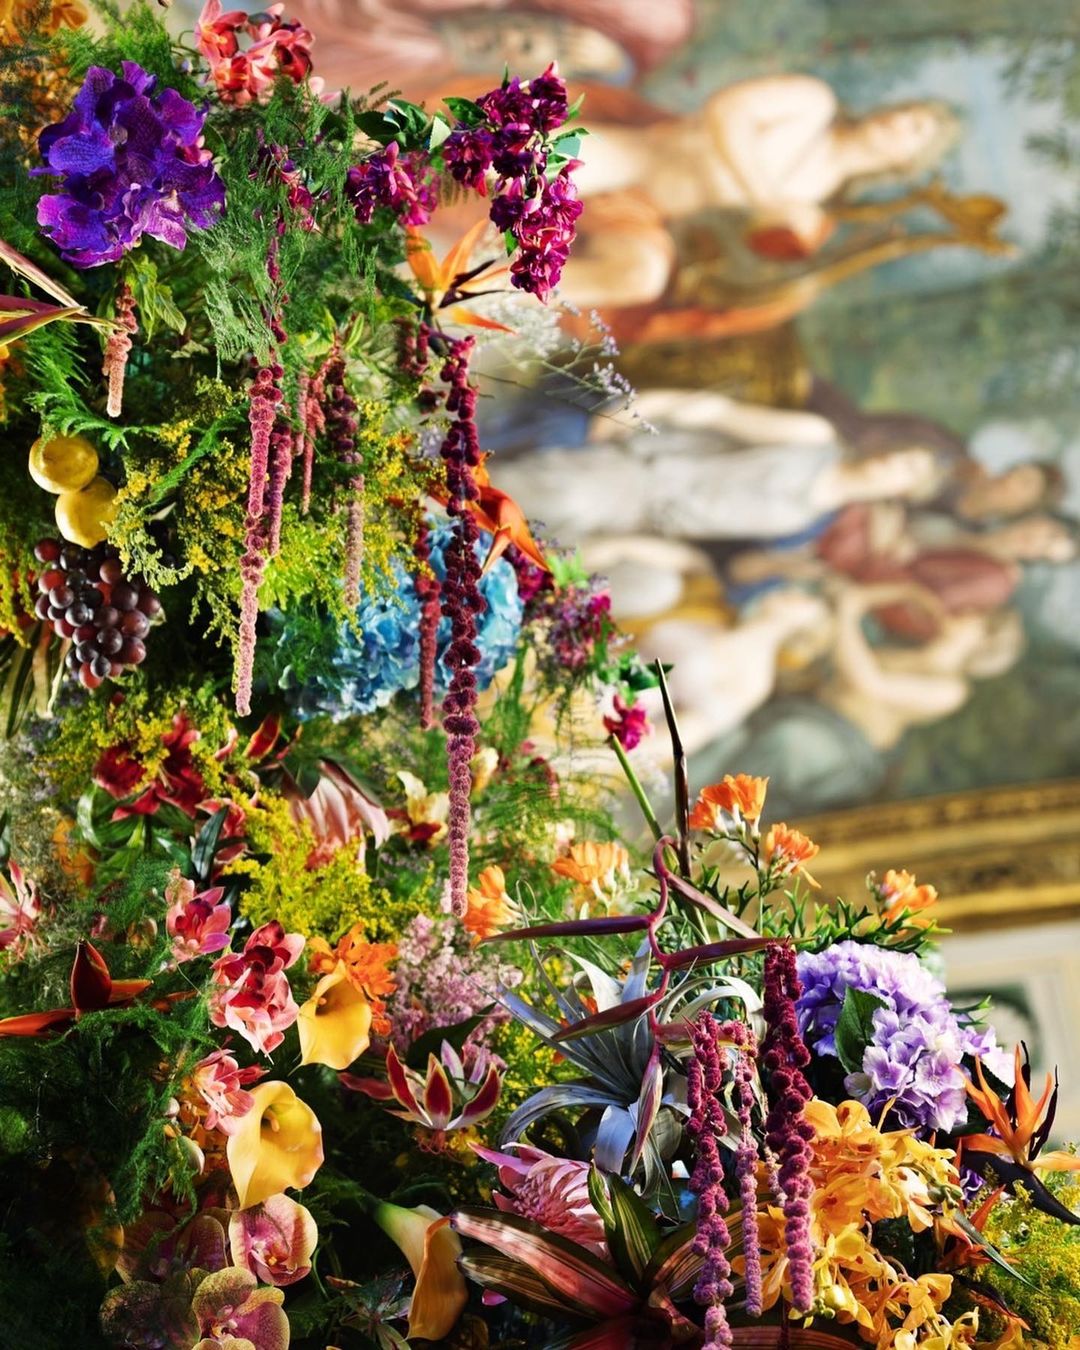 Azuma Makoto Features His Floral Artwork at Milan Design Week006